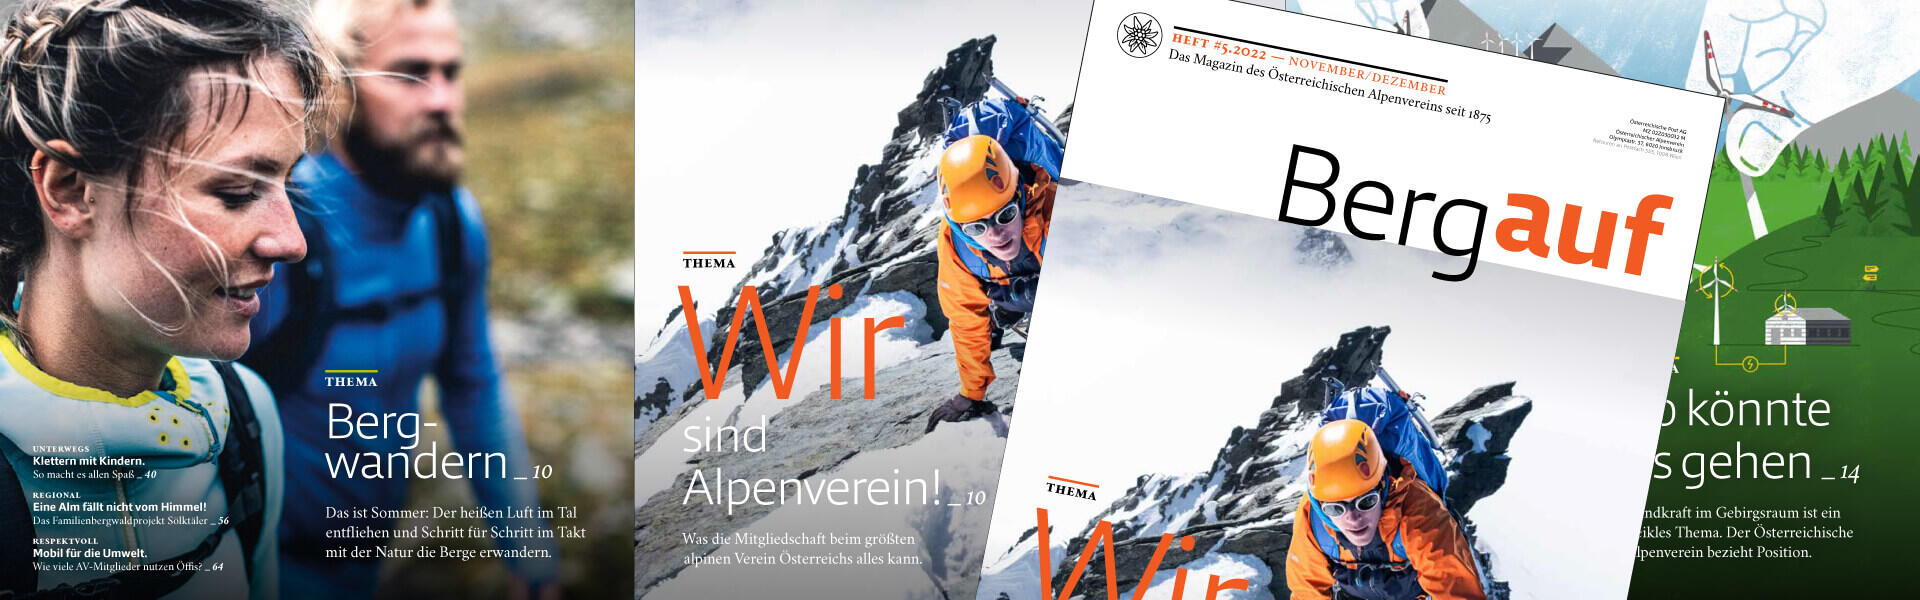 Alpenverein edelweiss OEAV.CZ časopis Bergauf